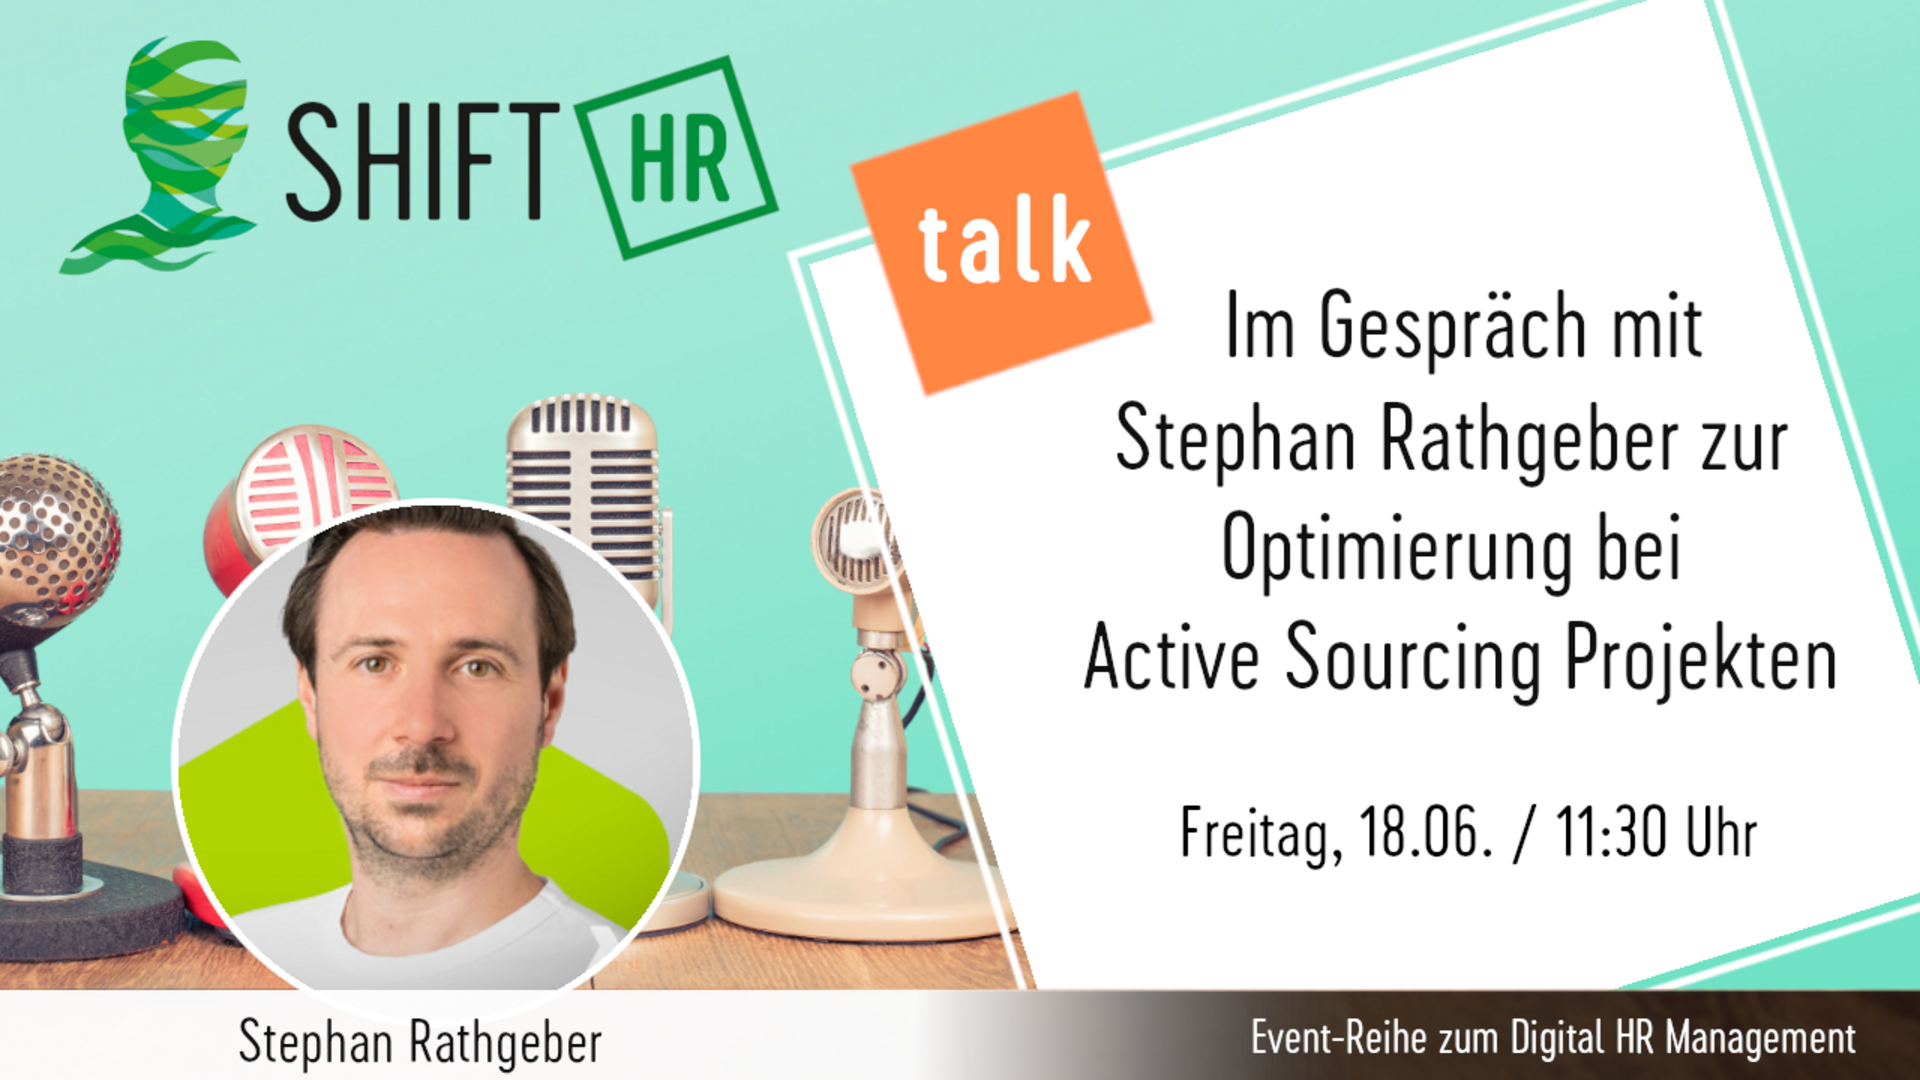 Im Gespräch mit Stephan Rathgeber zum Active Sourcing mit der Unterstützung von Technologie & Mensch